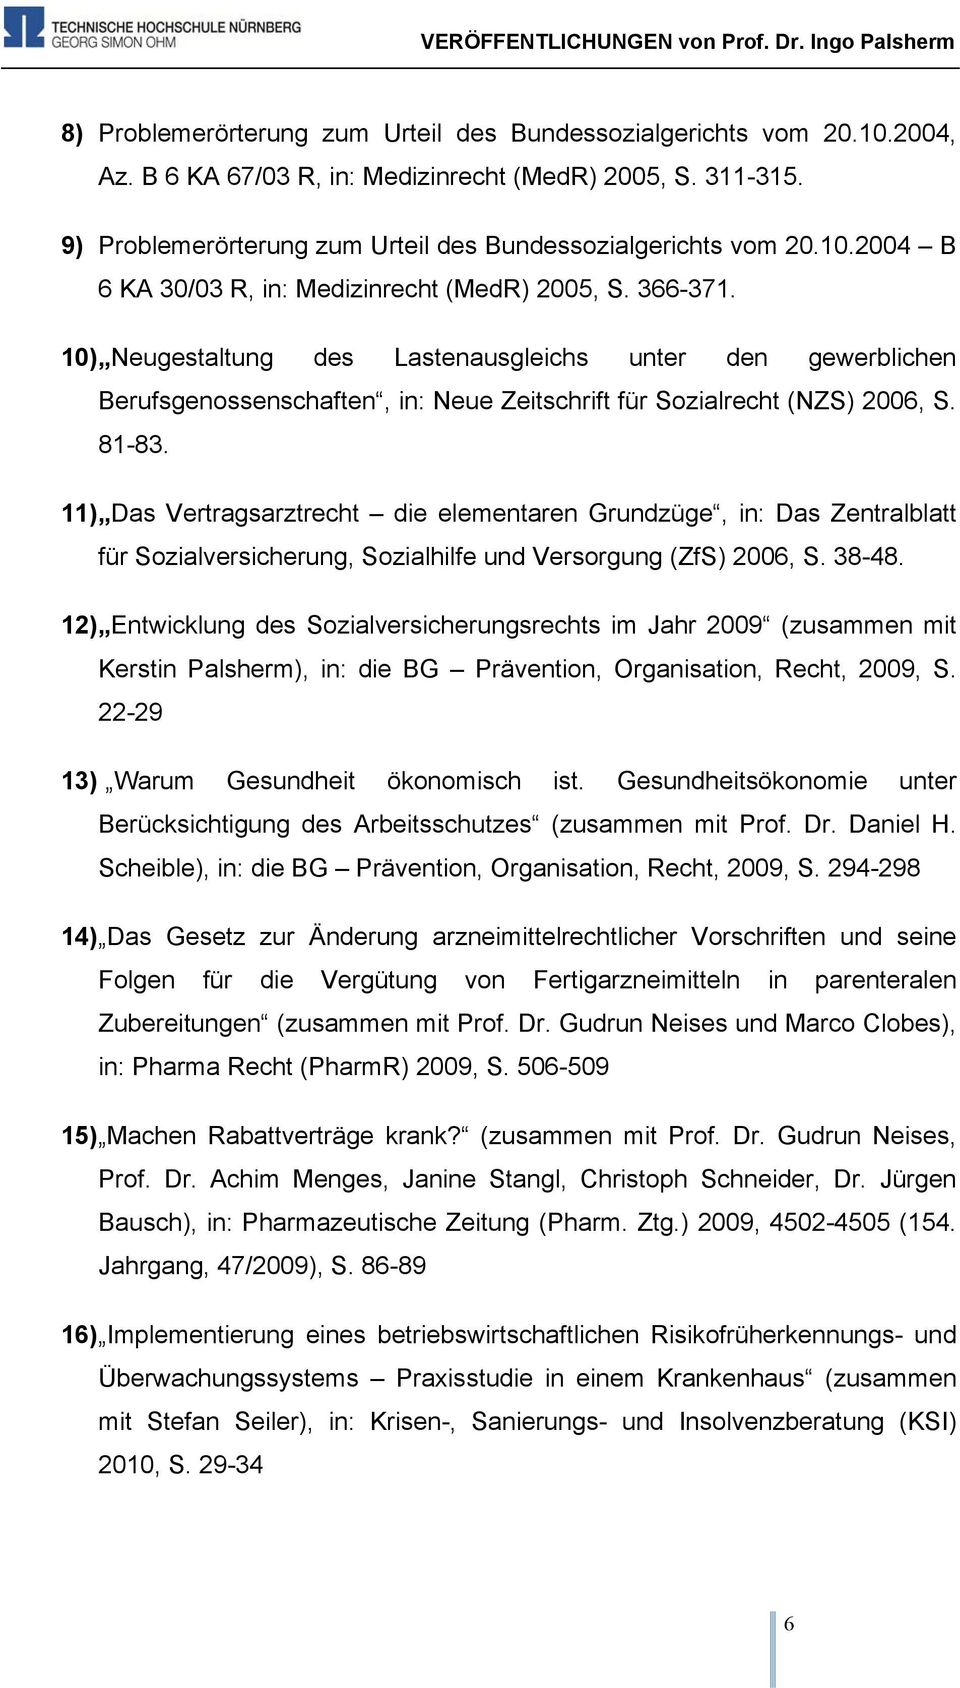 10) Neugestaltung des Lastenausgleichs unter den gewerblichen Berufsgenossenschaften, in: Neue Zeitschrift für Sozialrecht (NZS) 2006, S. 81-83.